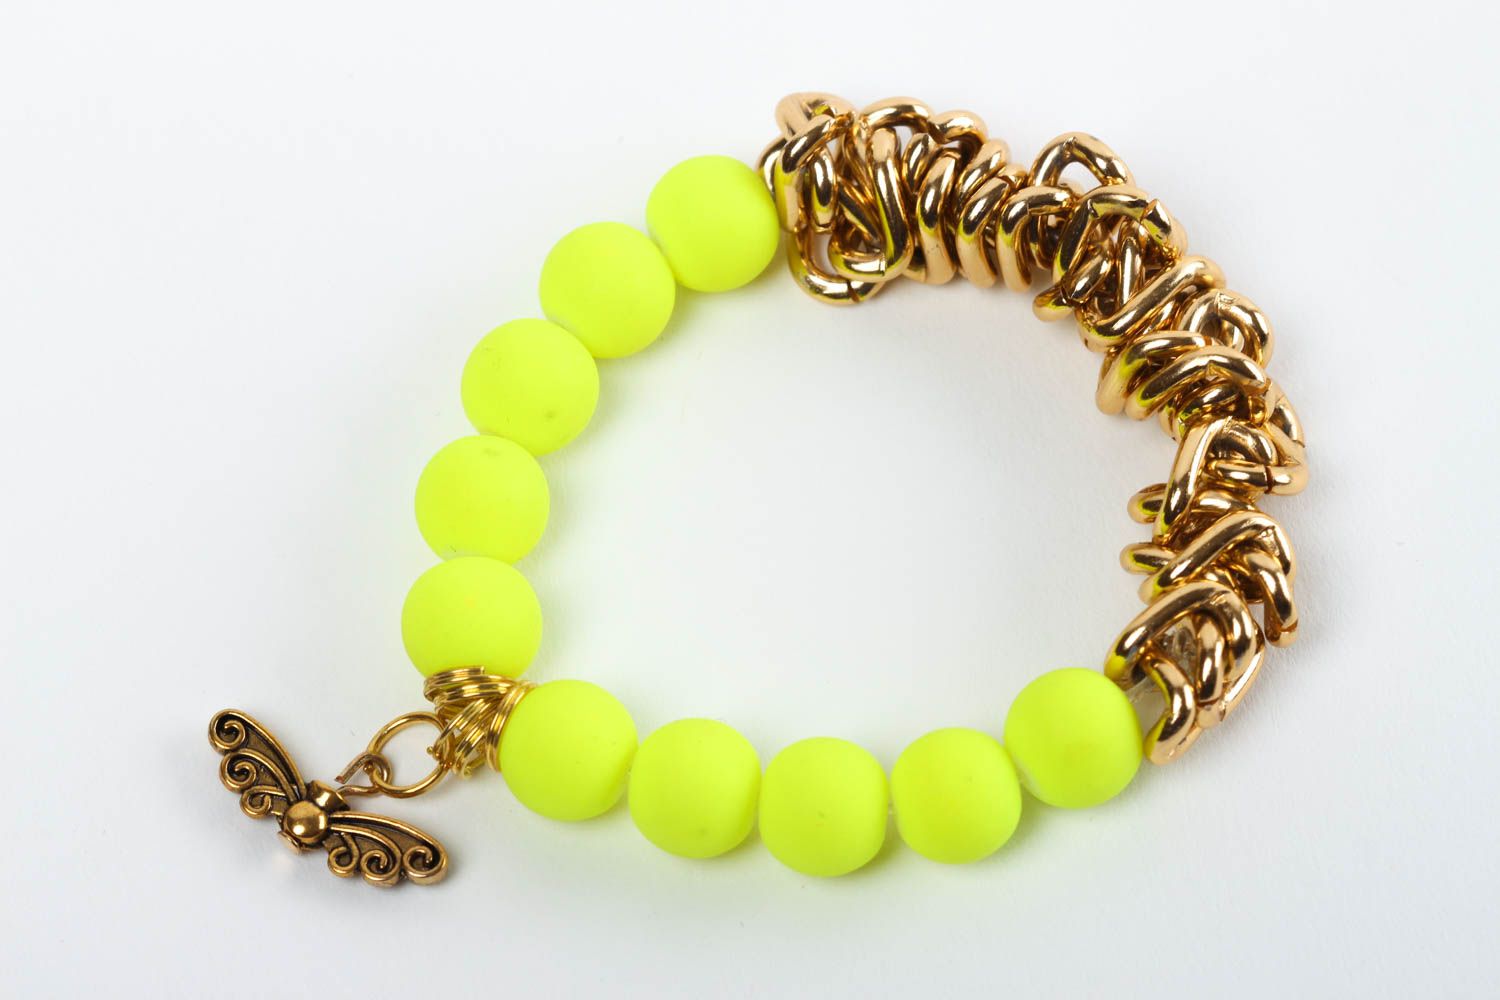 Handmade bracelet designer bracelet unusual accessory for girls gift ideas photo 1